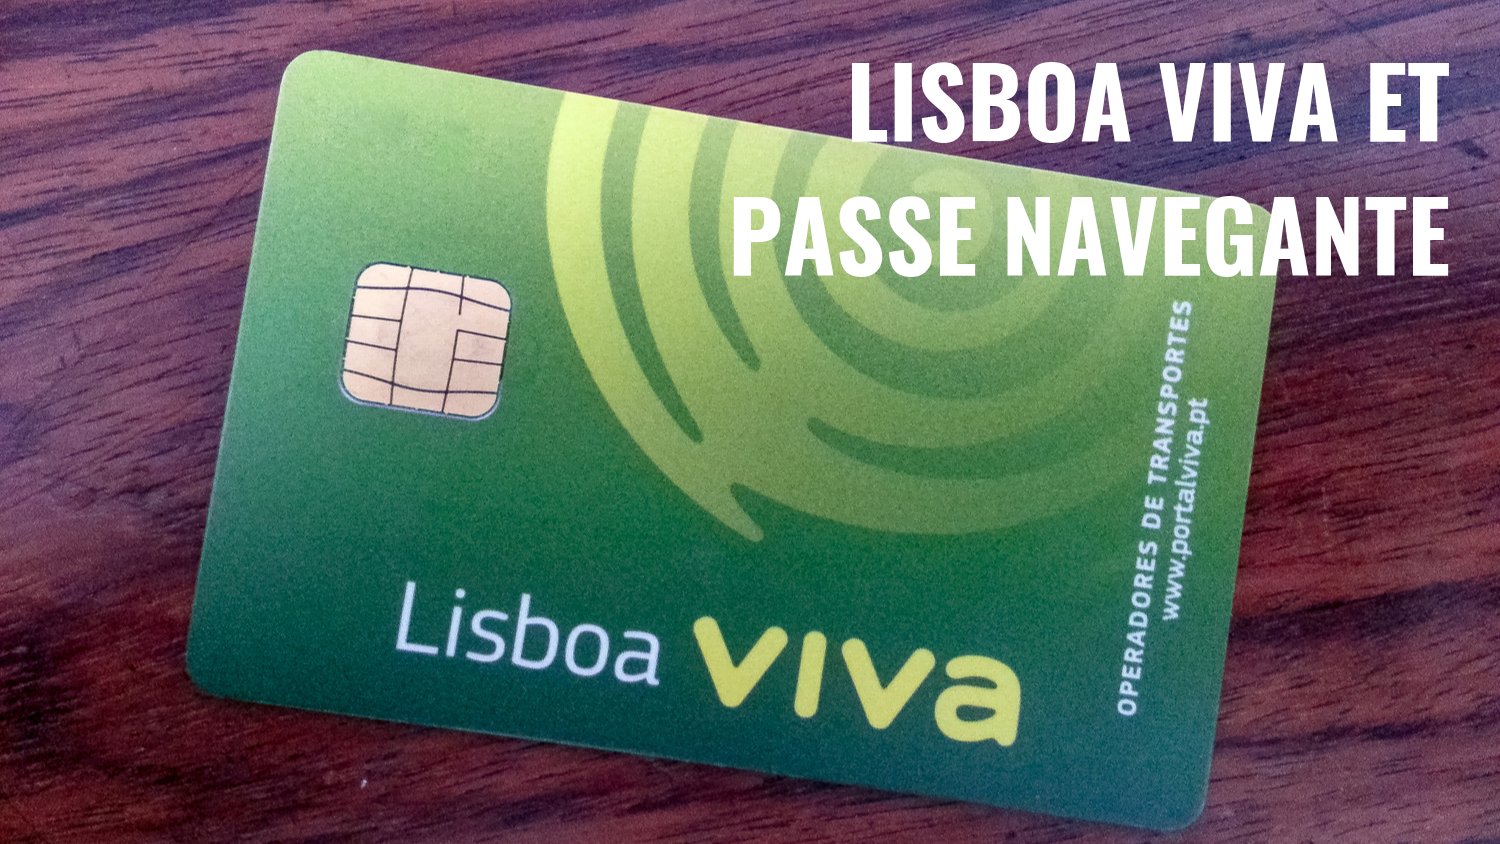 Carte Lisboa Viva et Passe Navegante – Les transports en commun de Lisbonne en illimité